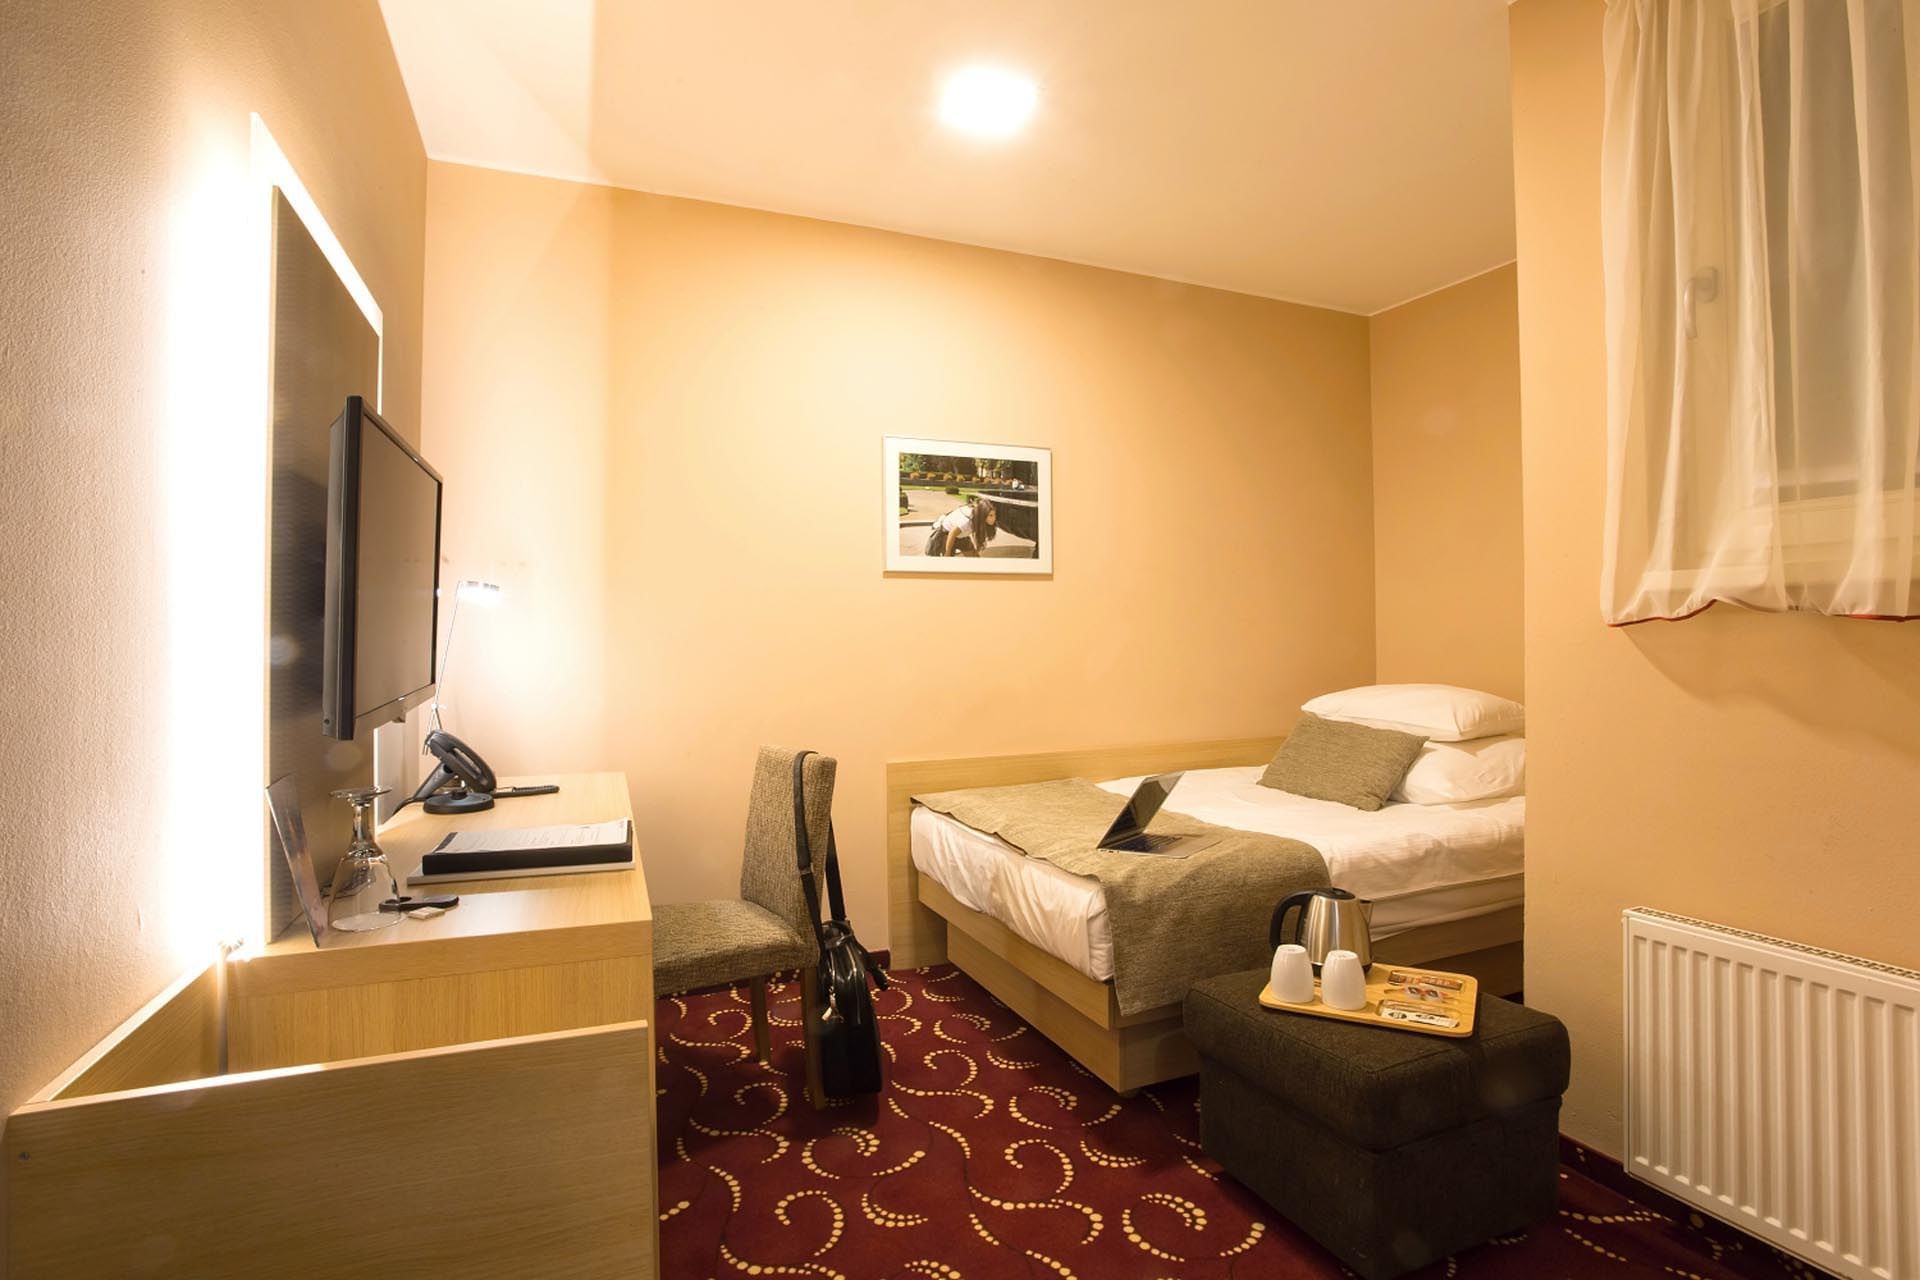 Single Economy Room with one bed at Hotel Amarilis